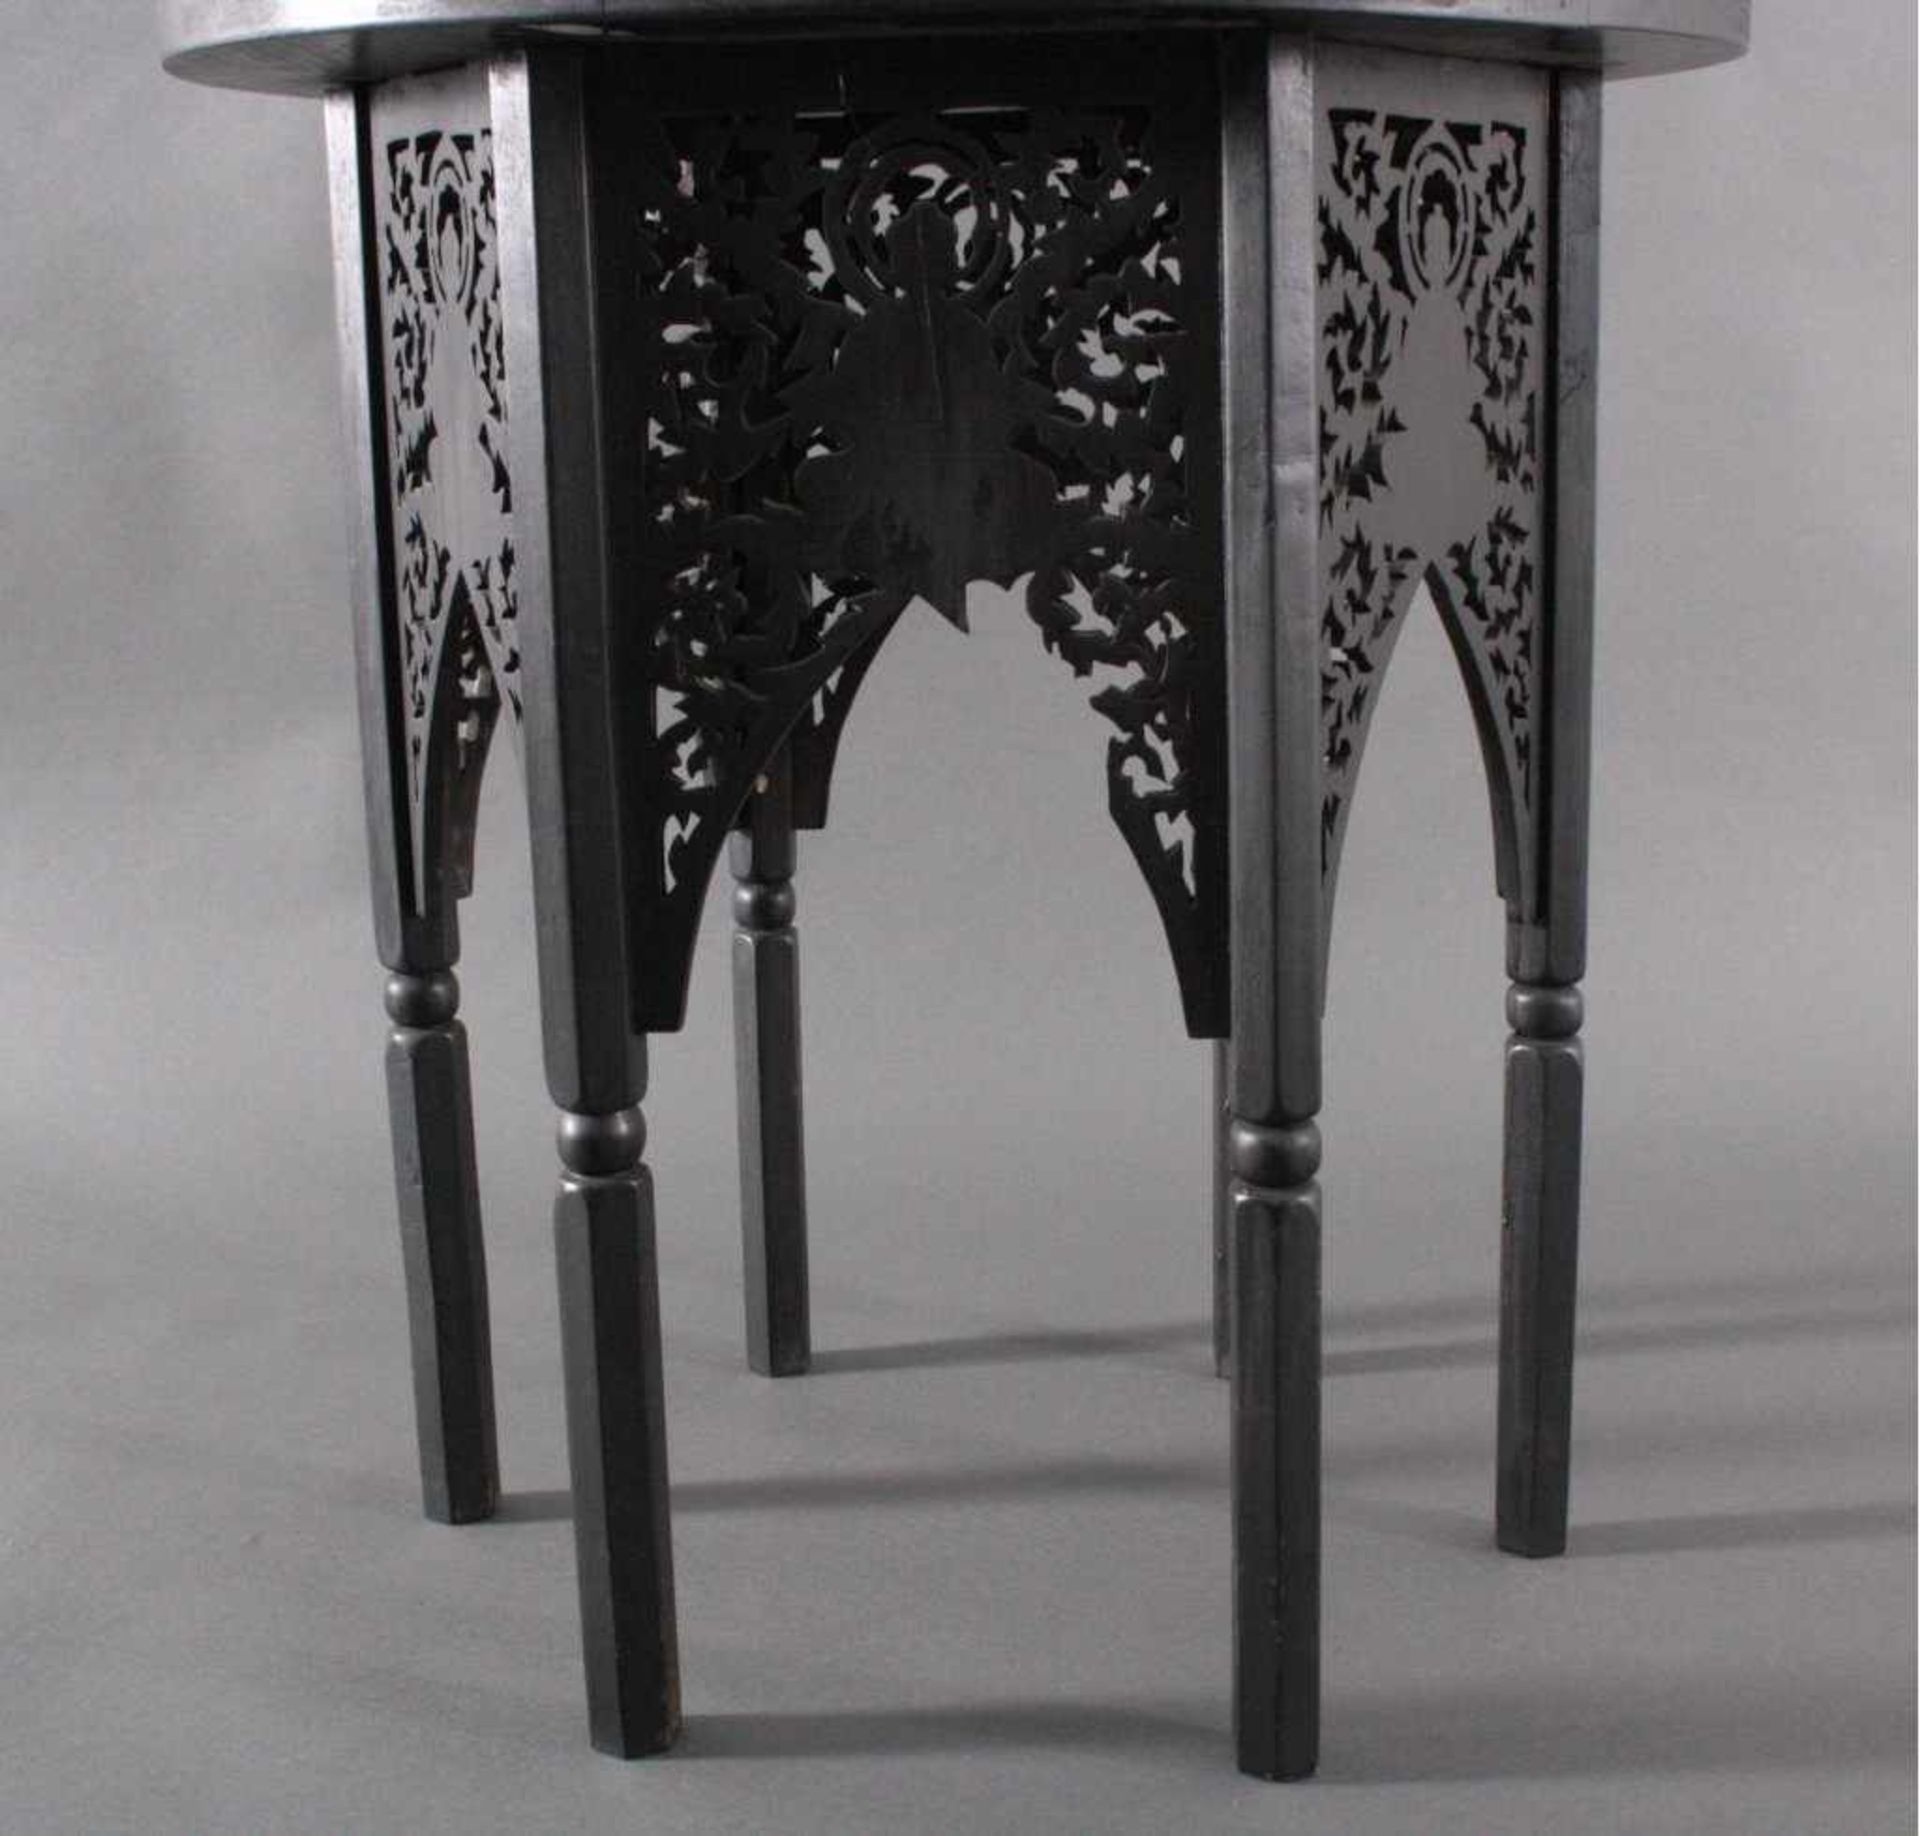 Kleiner Beistelltisch mit 2 Stühlen, ChinaMassiv, dunkles Holz, Runde Platte mitgeschnitztem - Bild 2 aus 3